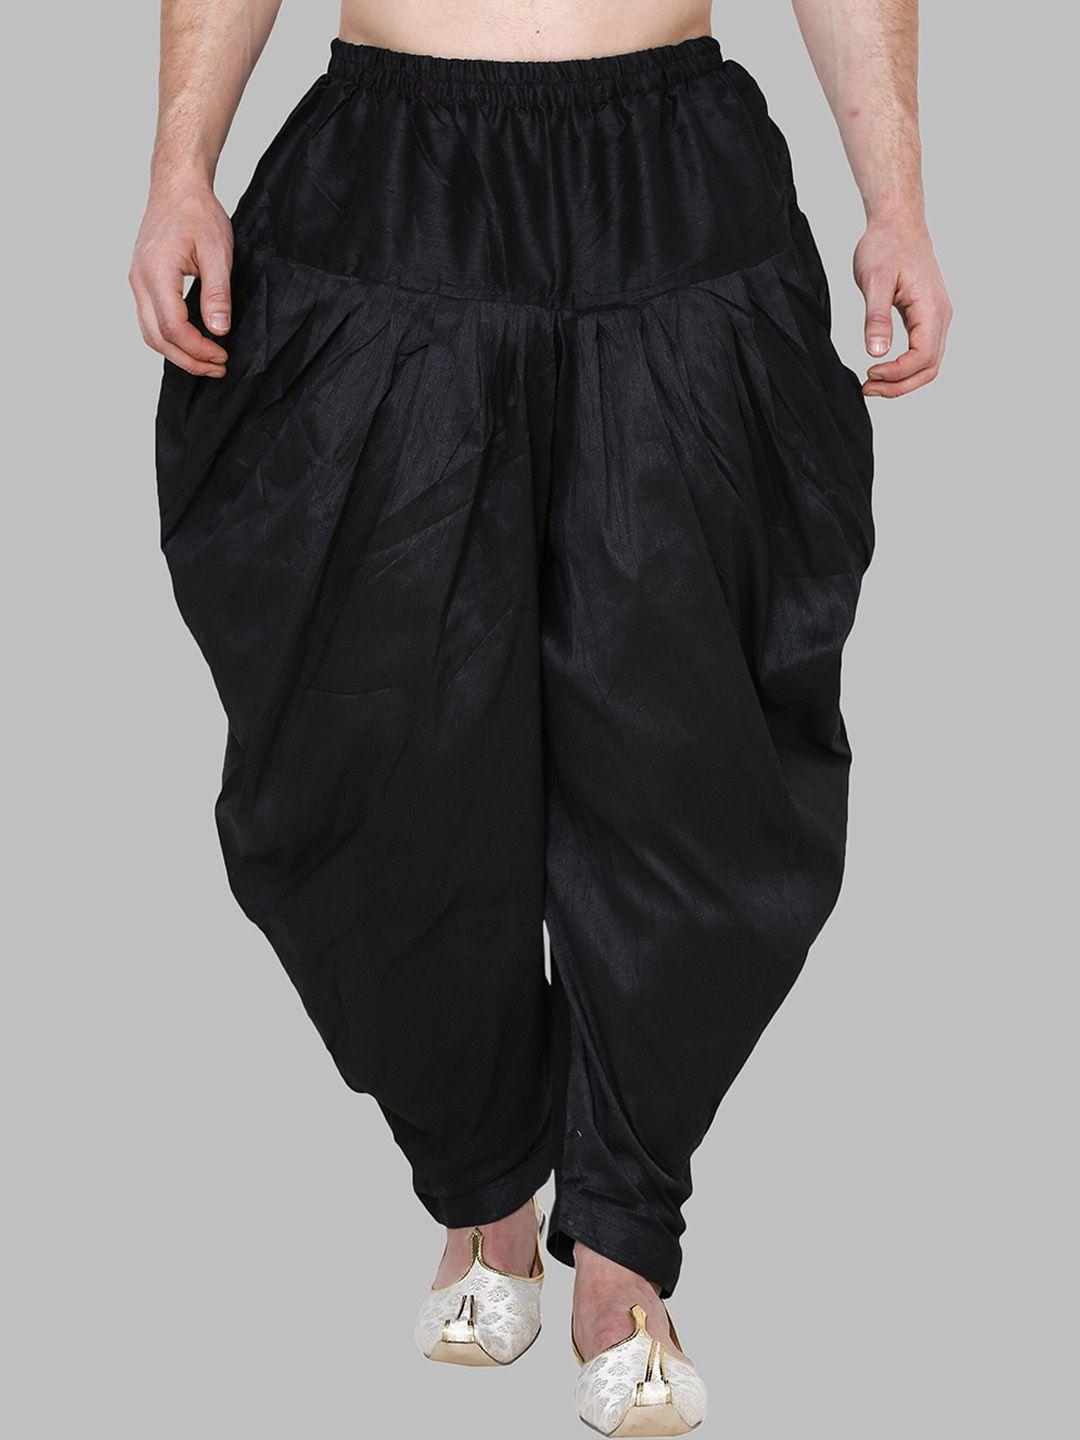 royal kurta men black solid loose-fit silk patiala salwar